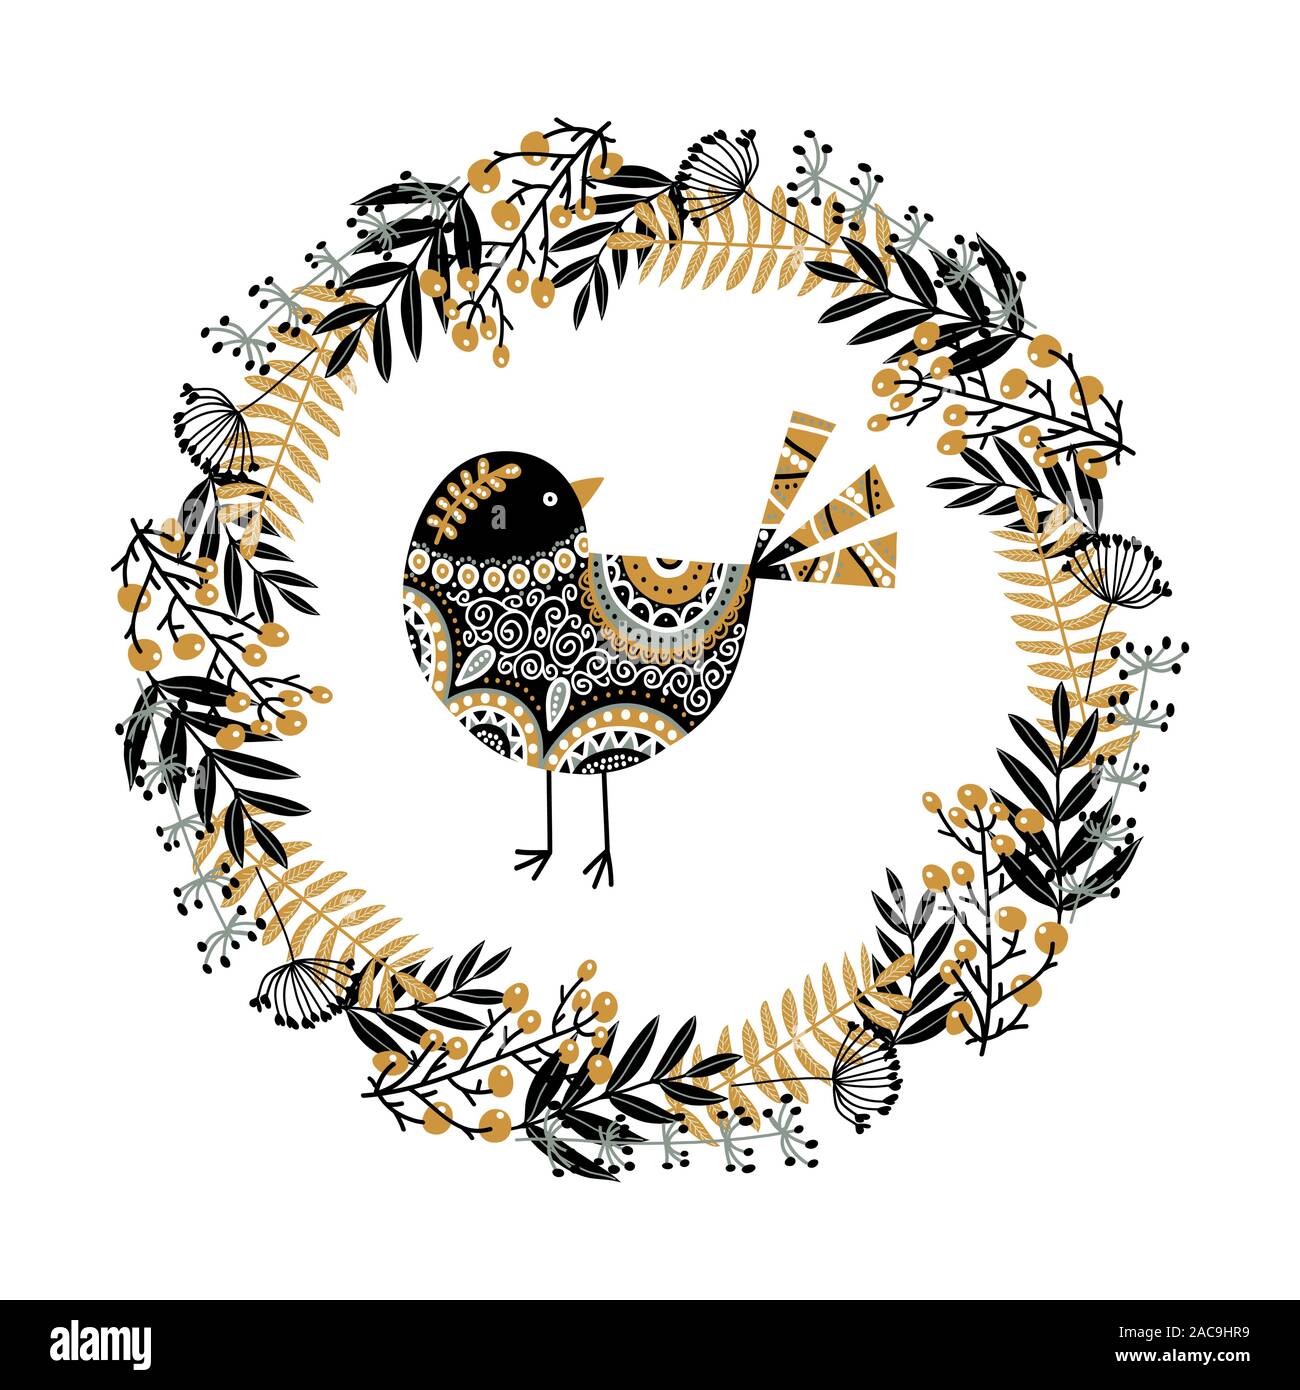 Cute Vector Vogel und einem Kranz von ihren Pflanzen, Blumen und Beeren. Einfarbig Schwarz und Weiß Vector Illustration im skandinavischen Stil. Stock Vektor